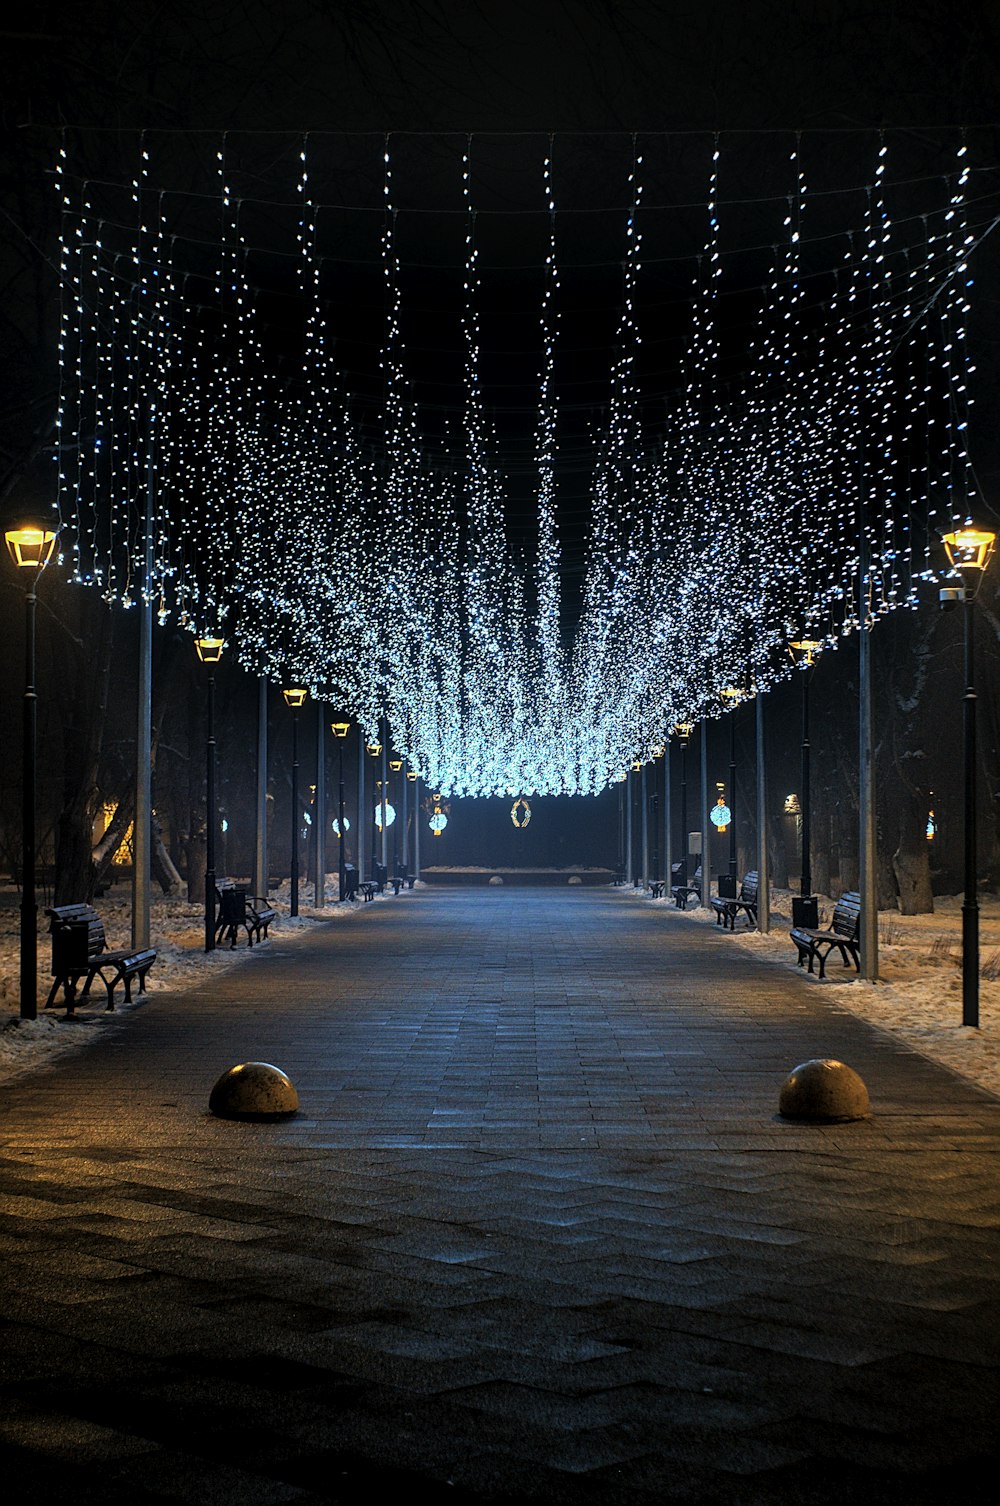 Lichterketten auf der Straße während der Nachtzeit